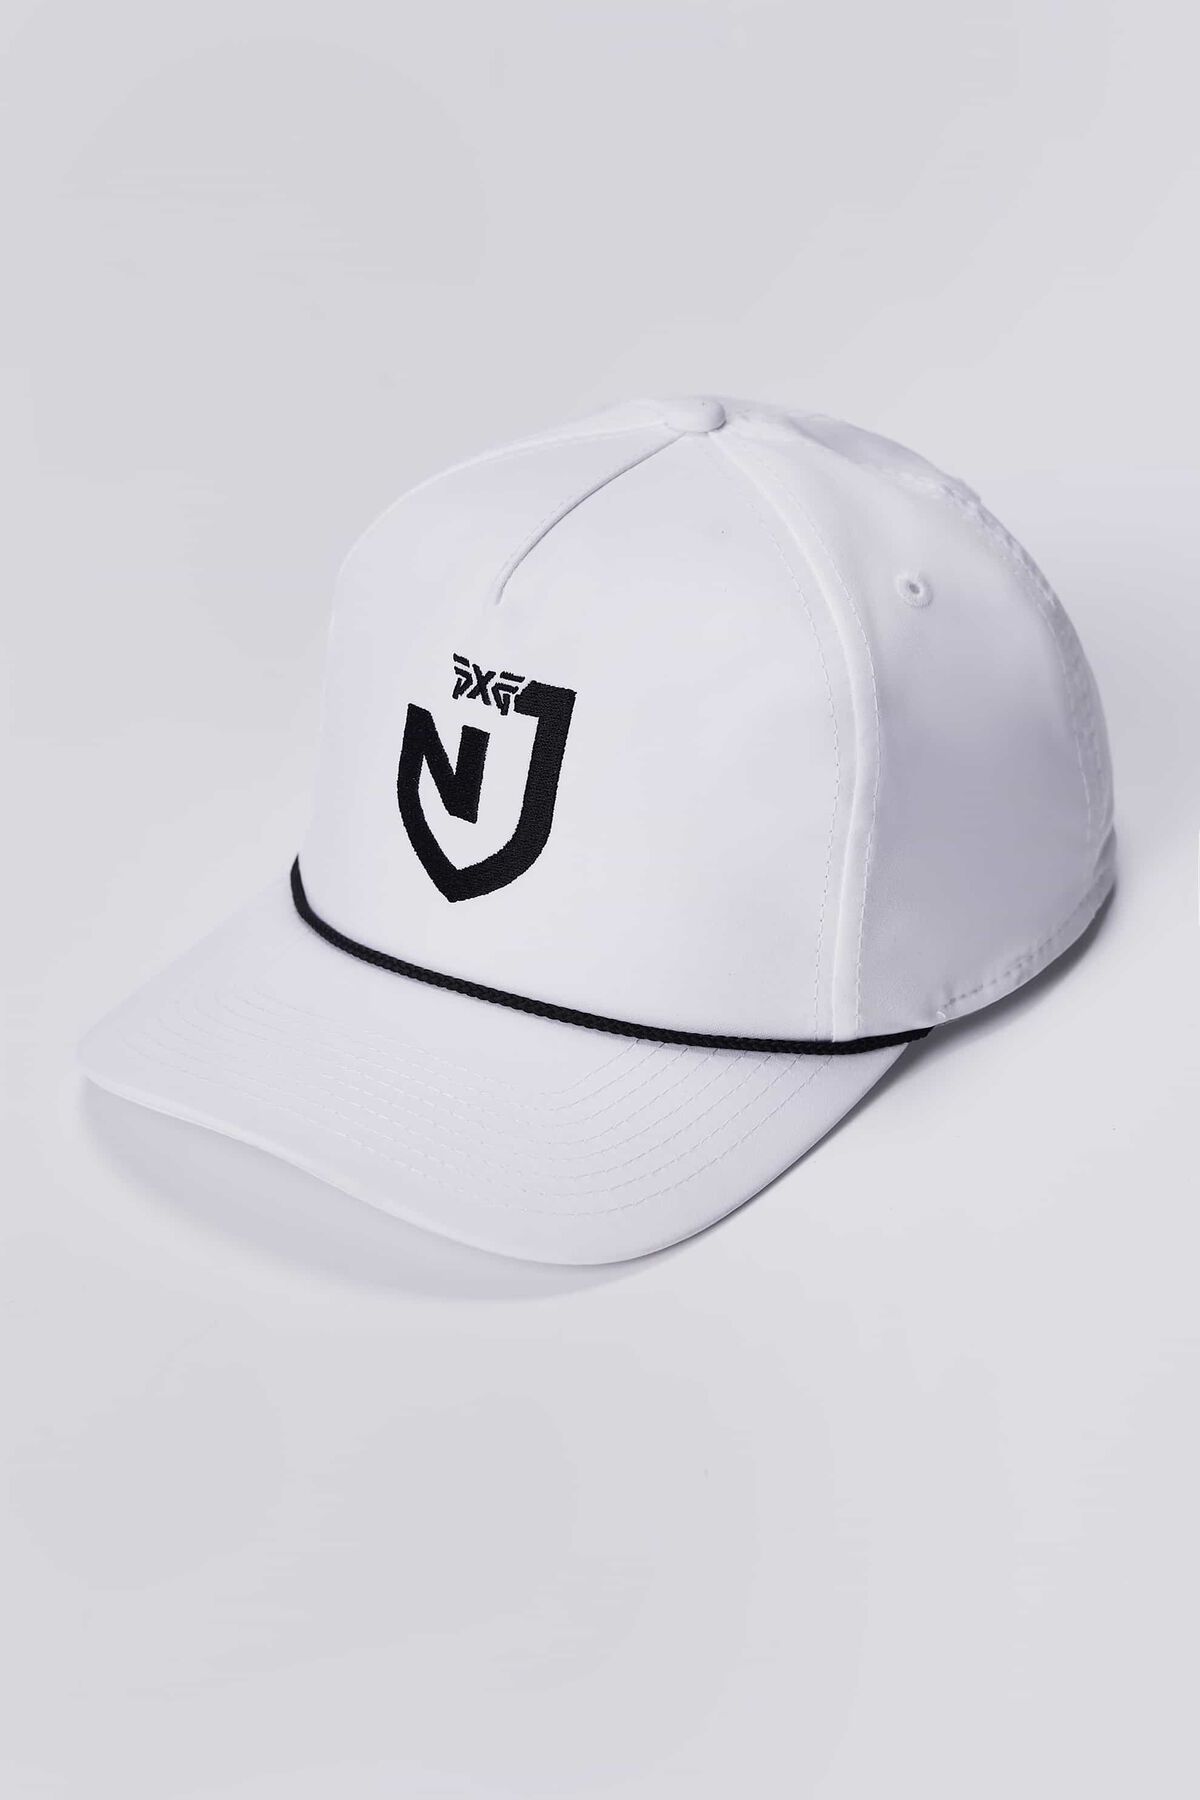 PXG x NJ Hat - White White